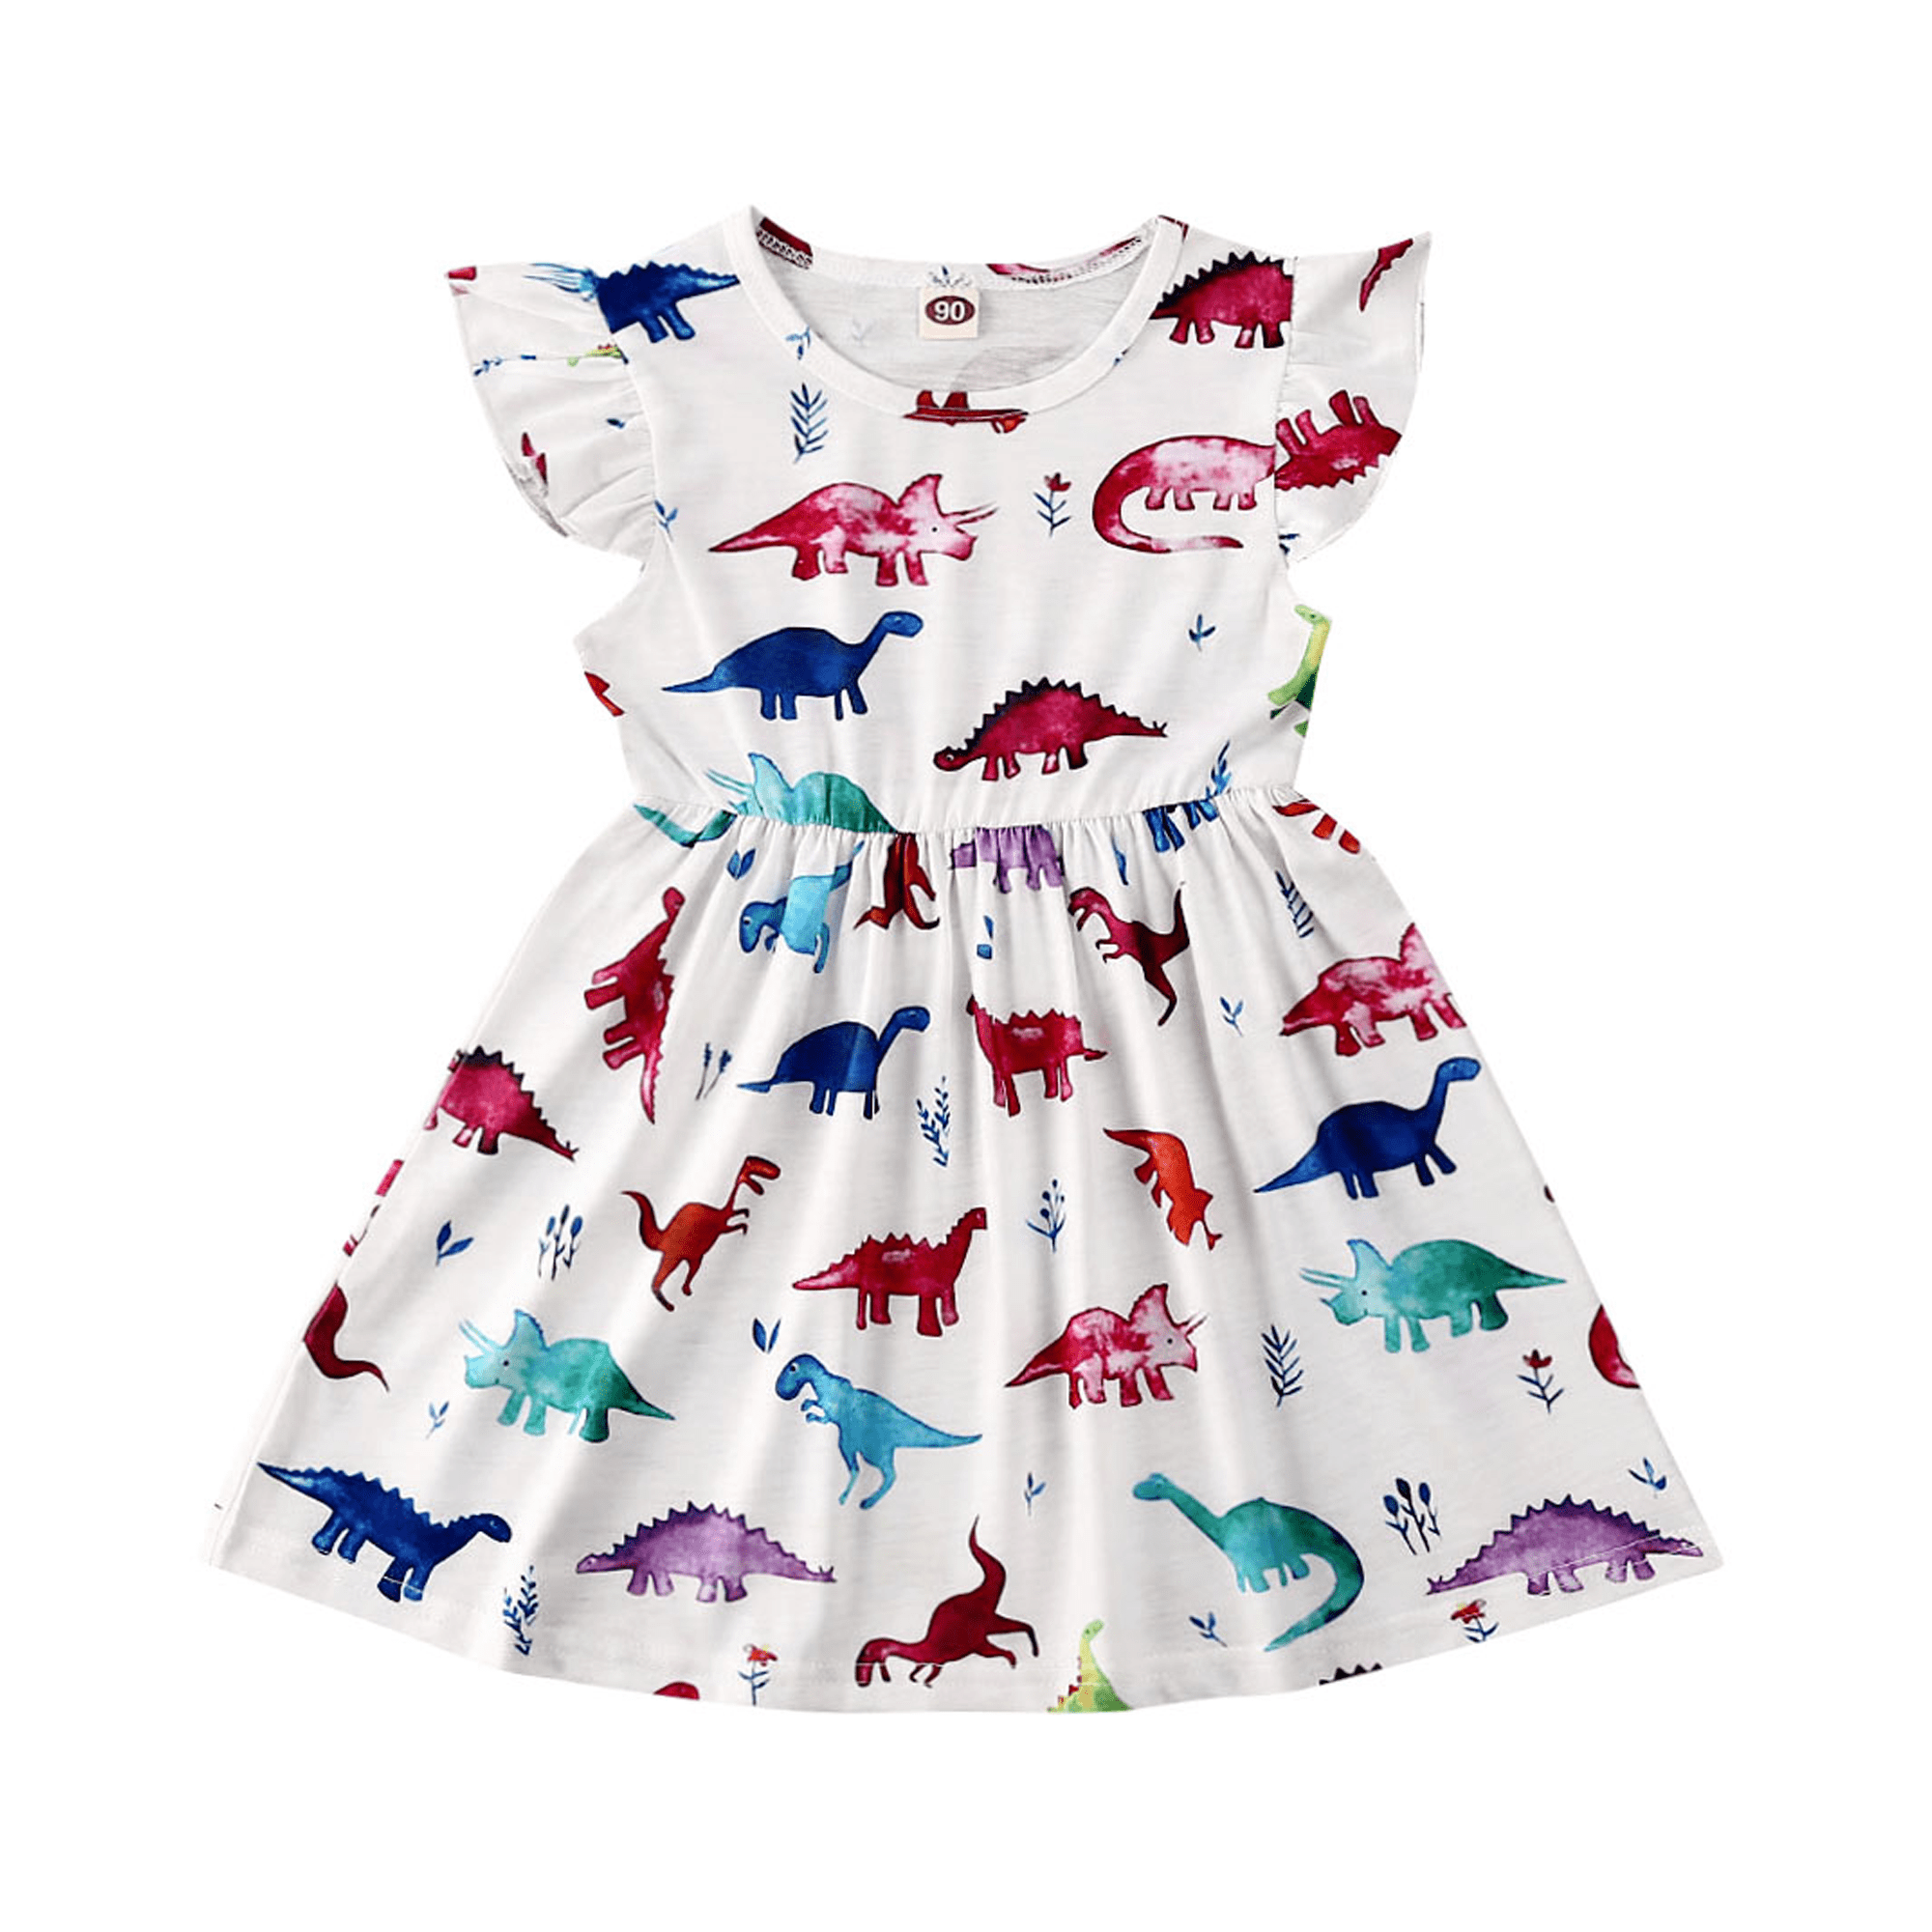 Jchen Little Girl Dress Toddler Little Girls Long Sleeve Cartoon Dinosaur Print Dress Outfits Clothes for 1-5 Y TM